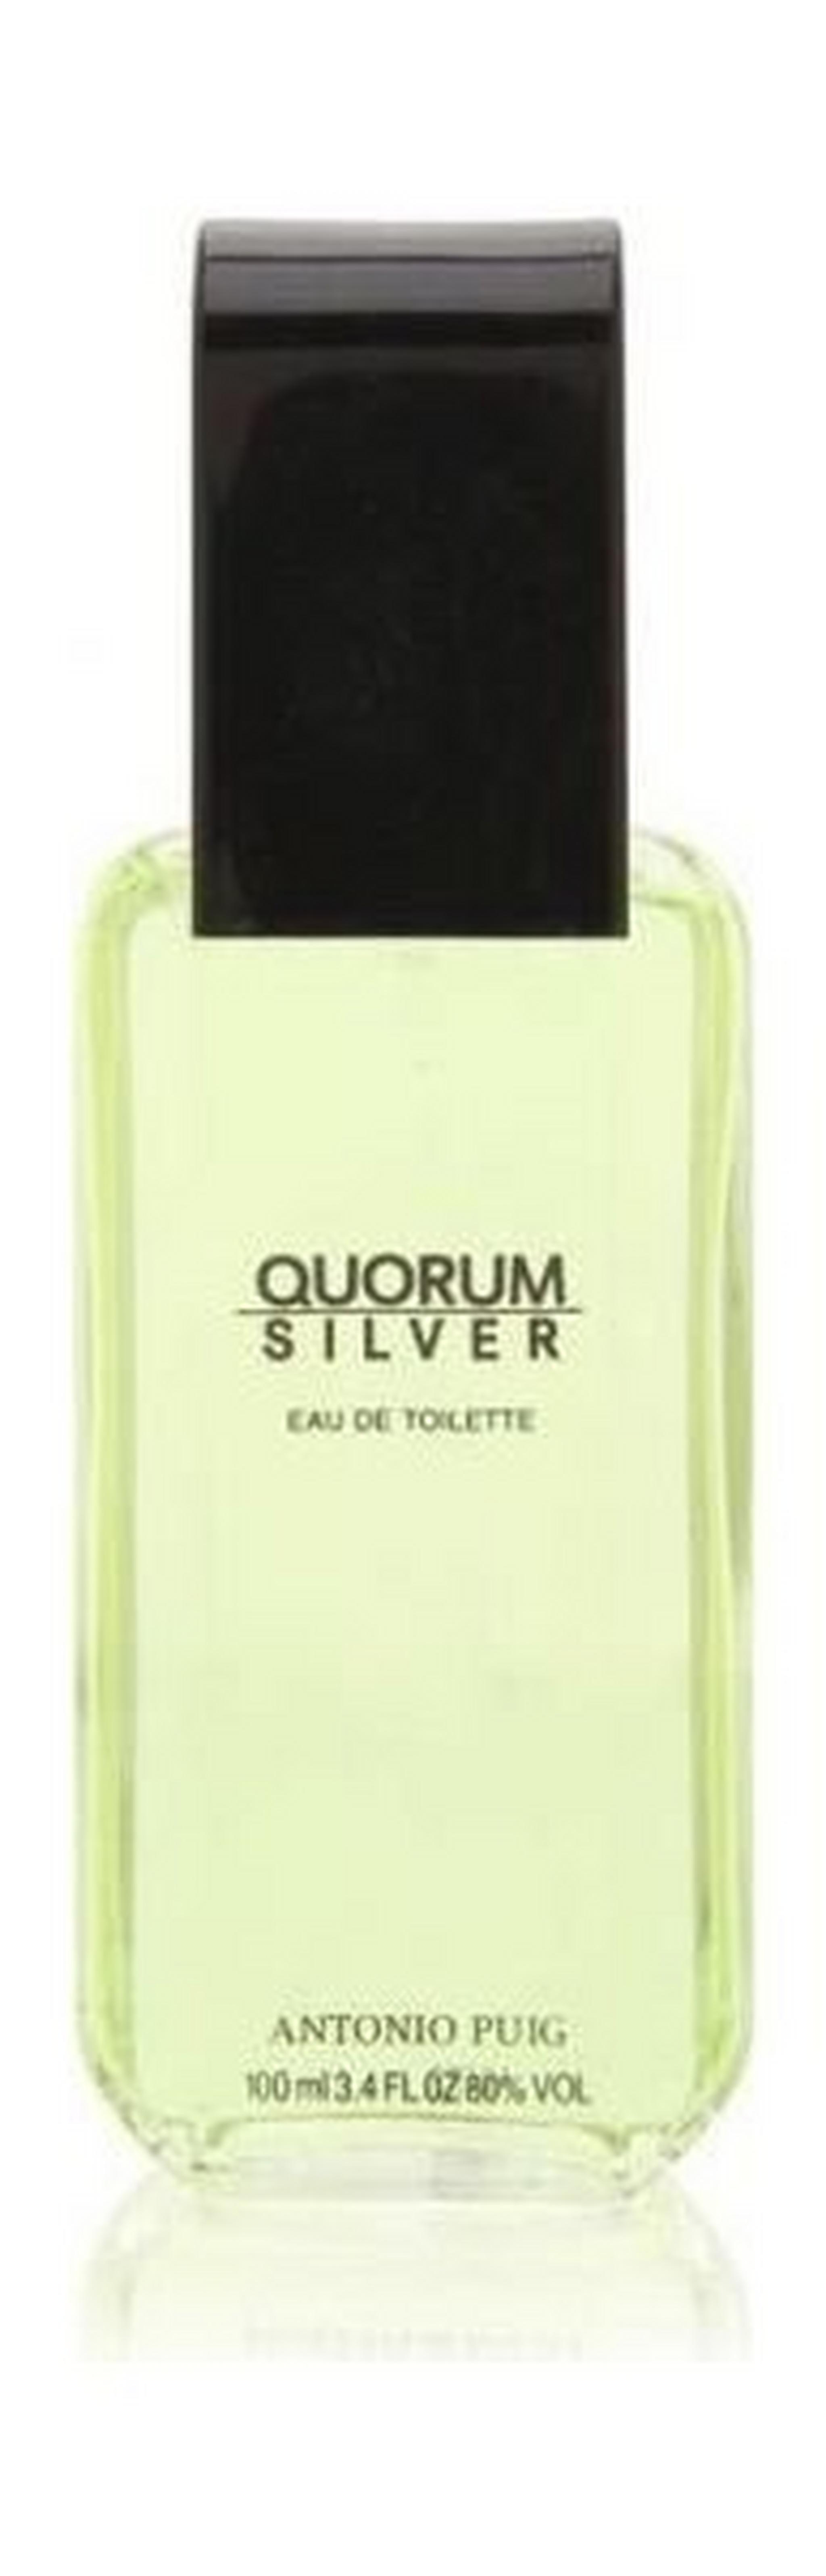 Quorum Silver 100ml Mens Perfume Eau de Toilette